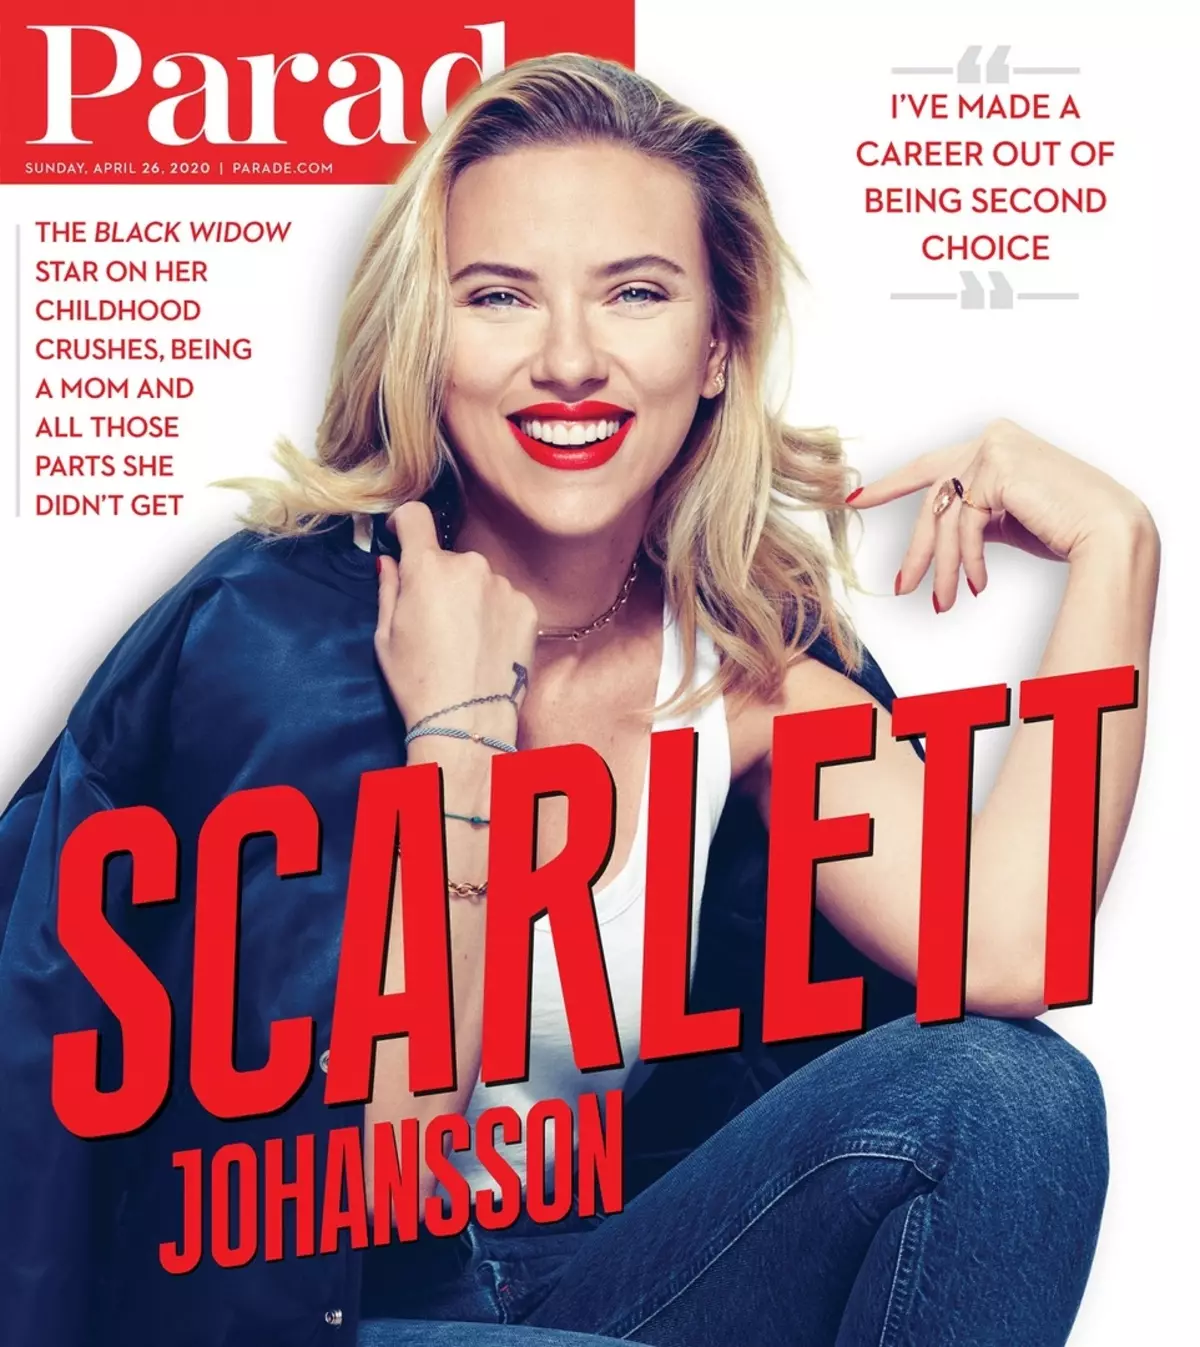 Scarlett Johansson akataura nezve kushaya chete kwekushomeka 115651_1